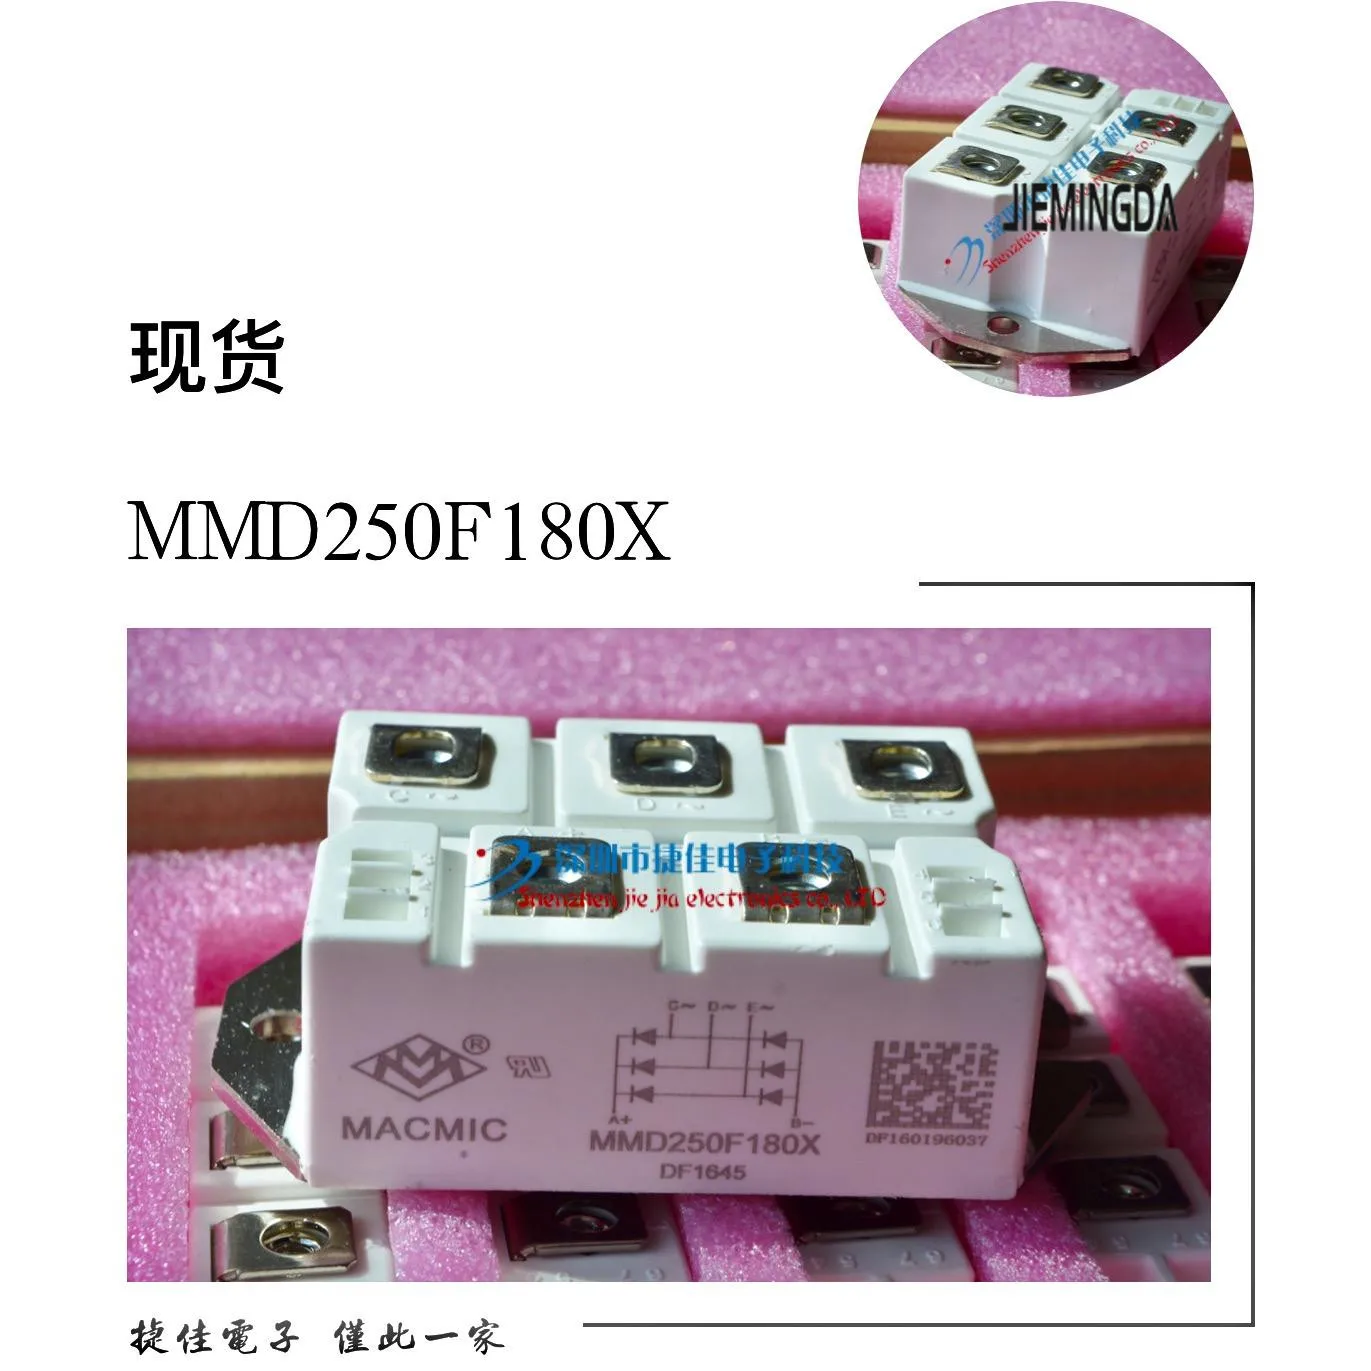 MSD130-16 MSD160-16 MSD100-16 MDS200-16 MMD150F160X 100% nauji ir originalūs - 1